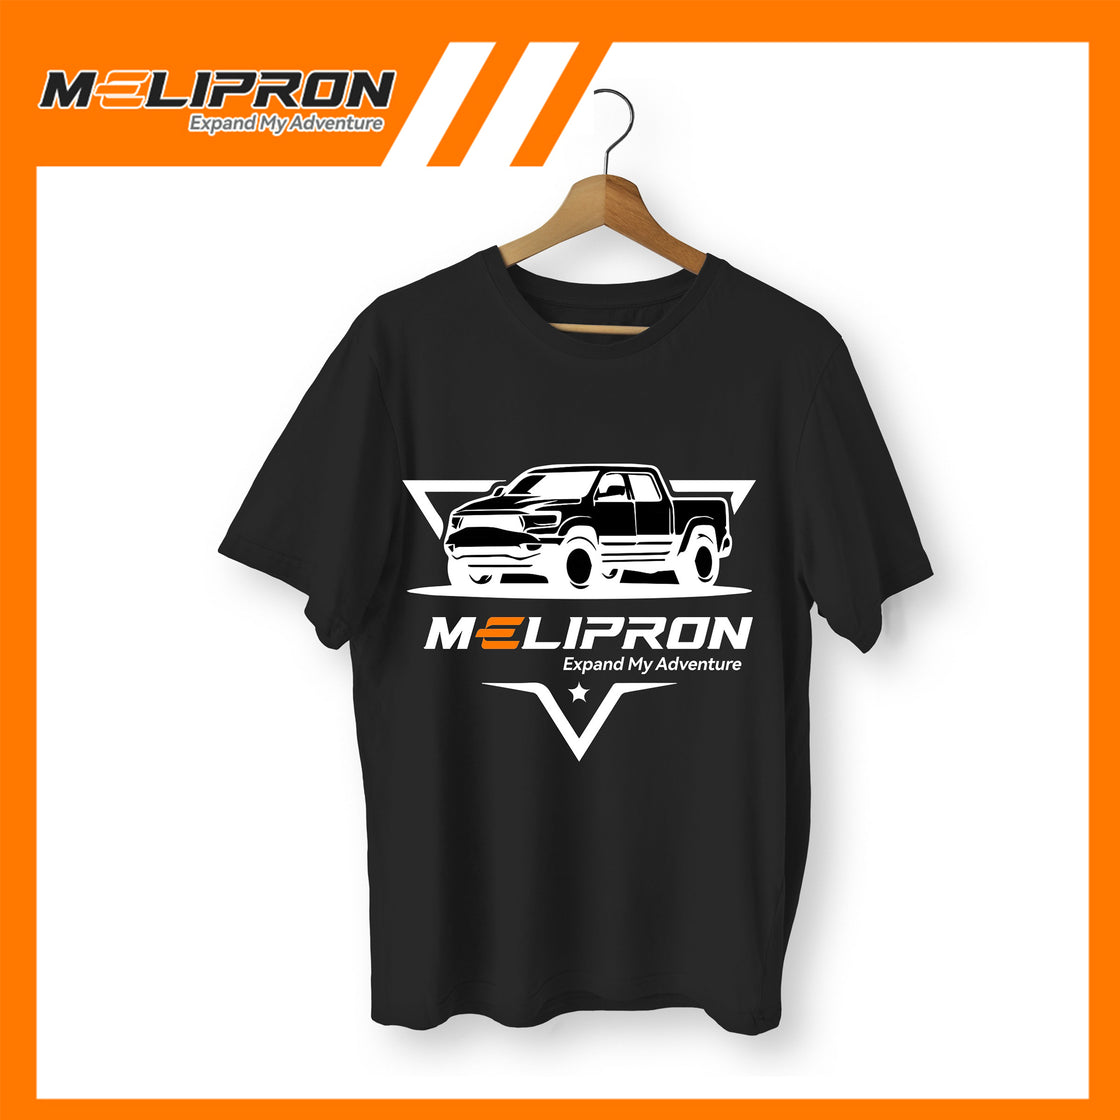 Melipron Jet-black T-shirt